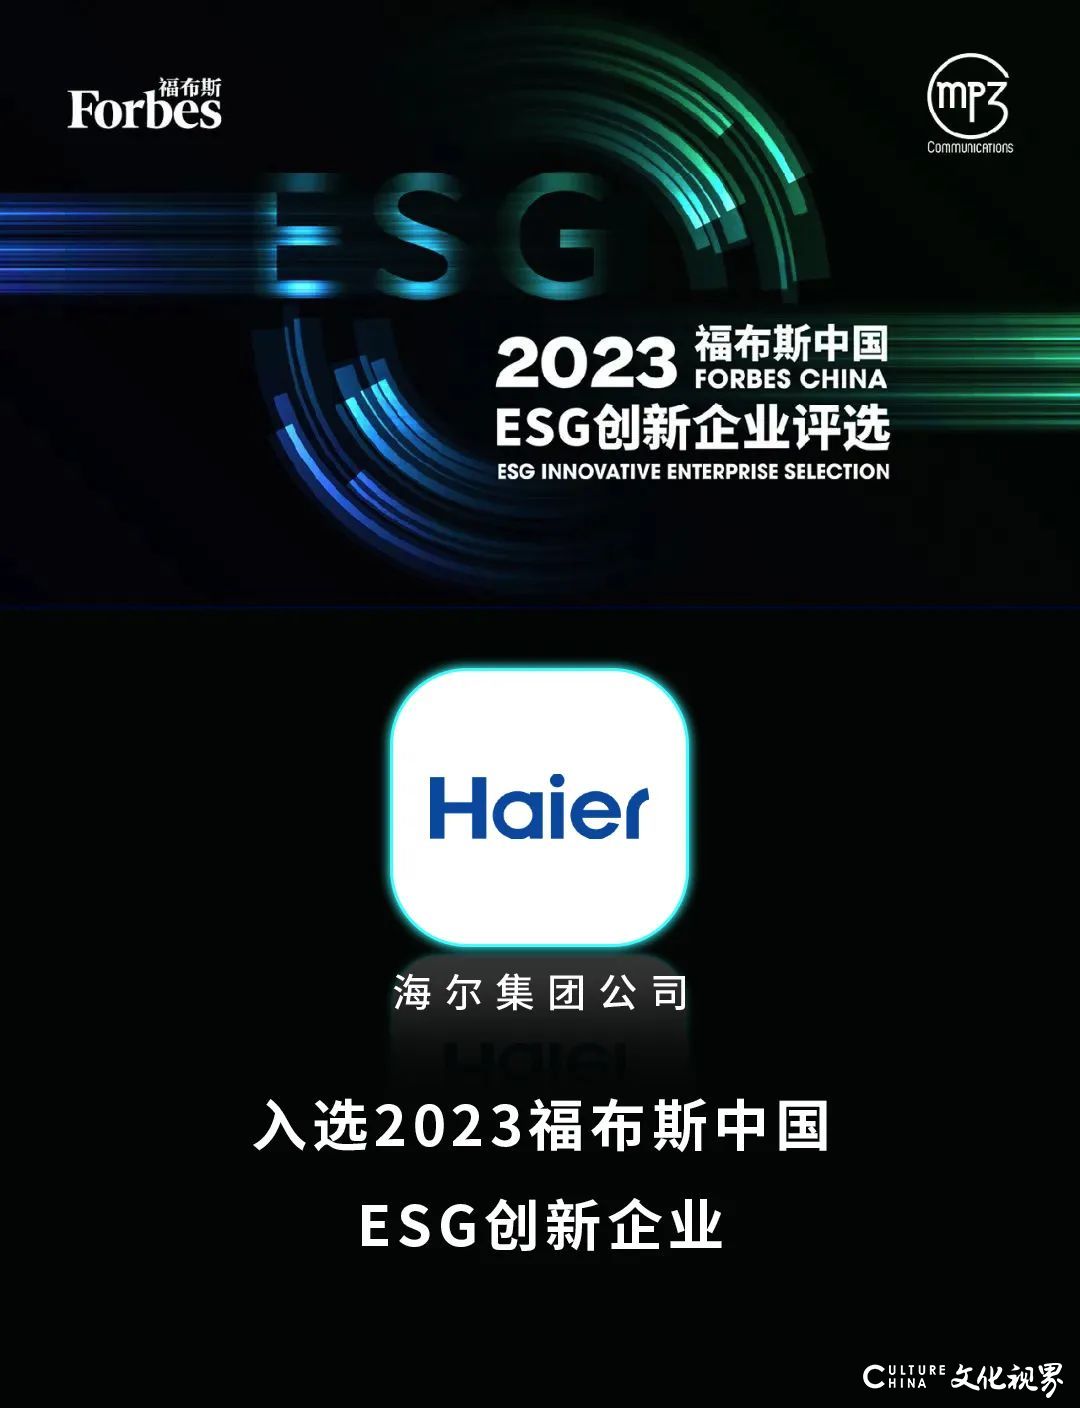 海尔入选“2023福布斯中国ESG创新企业”名单